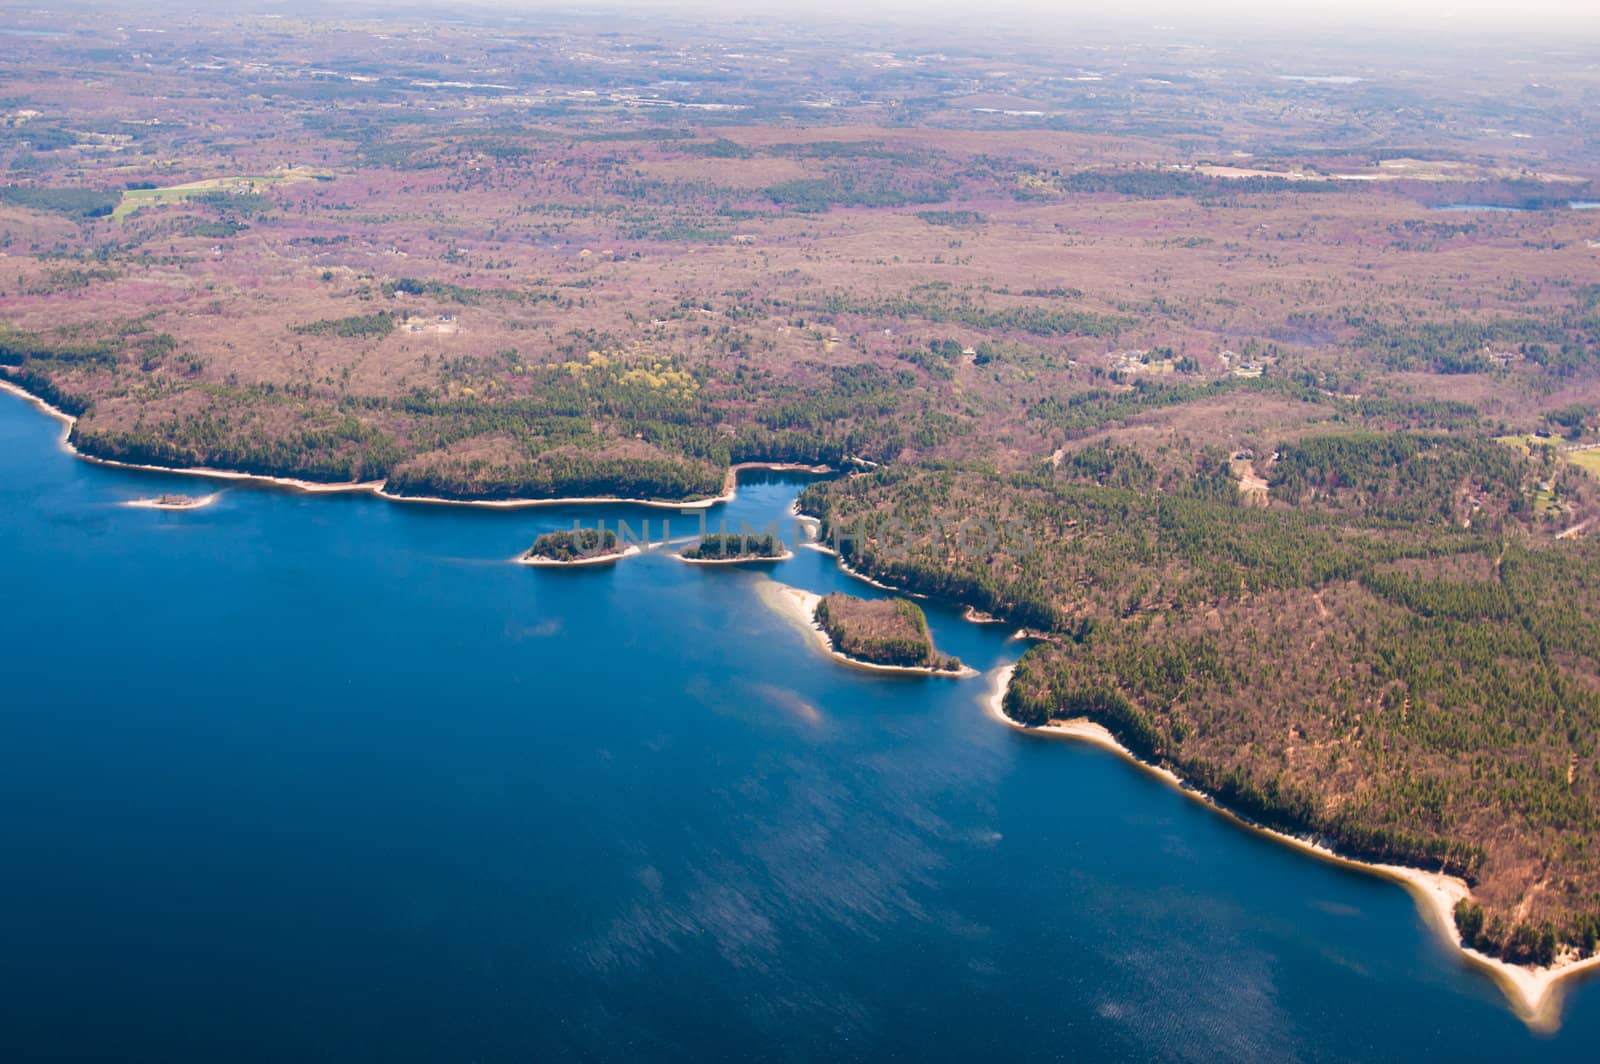 Aerial view of the Wachusett Reservoir, Massachusetts